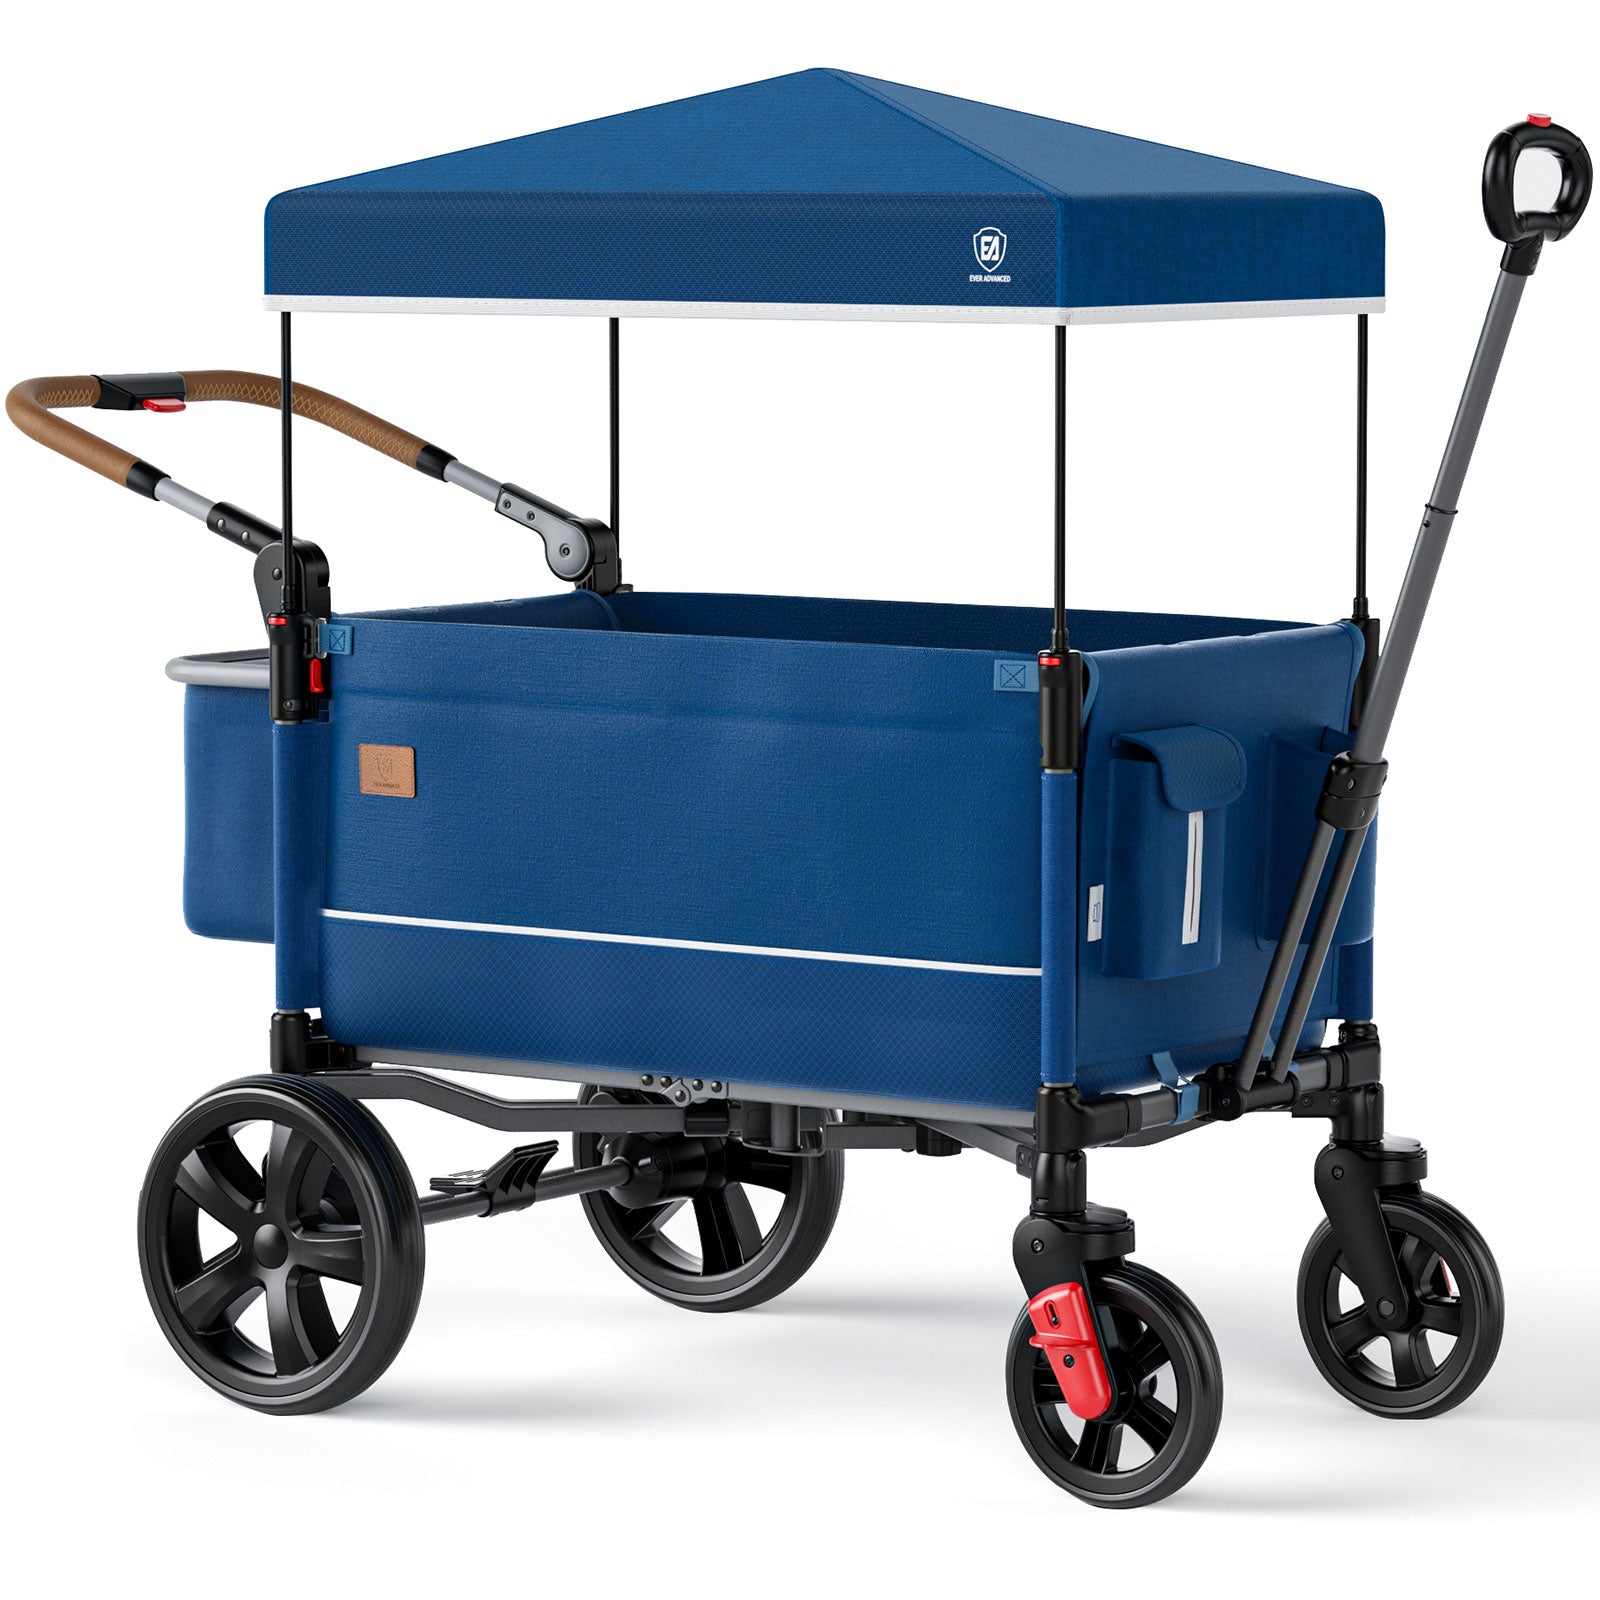 Side-Unzip Wagon Stroller